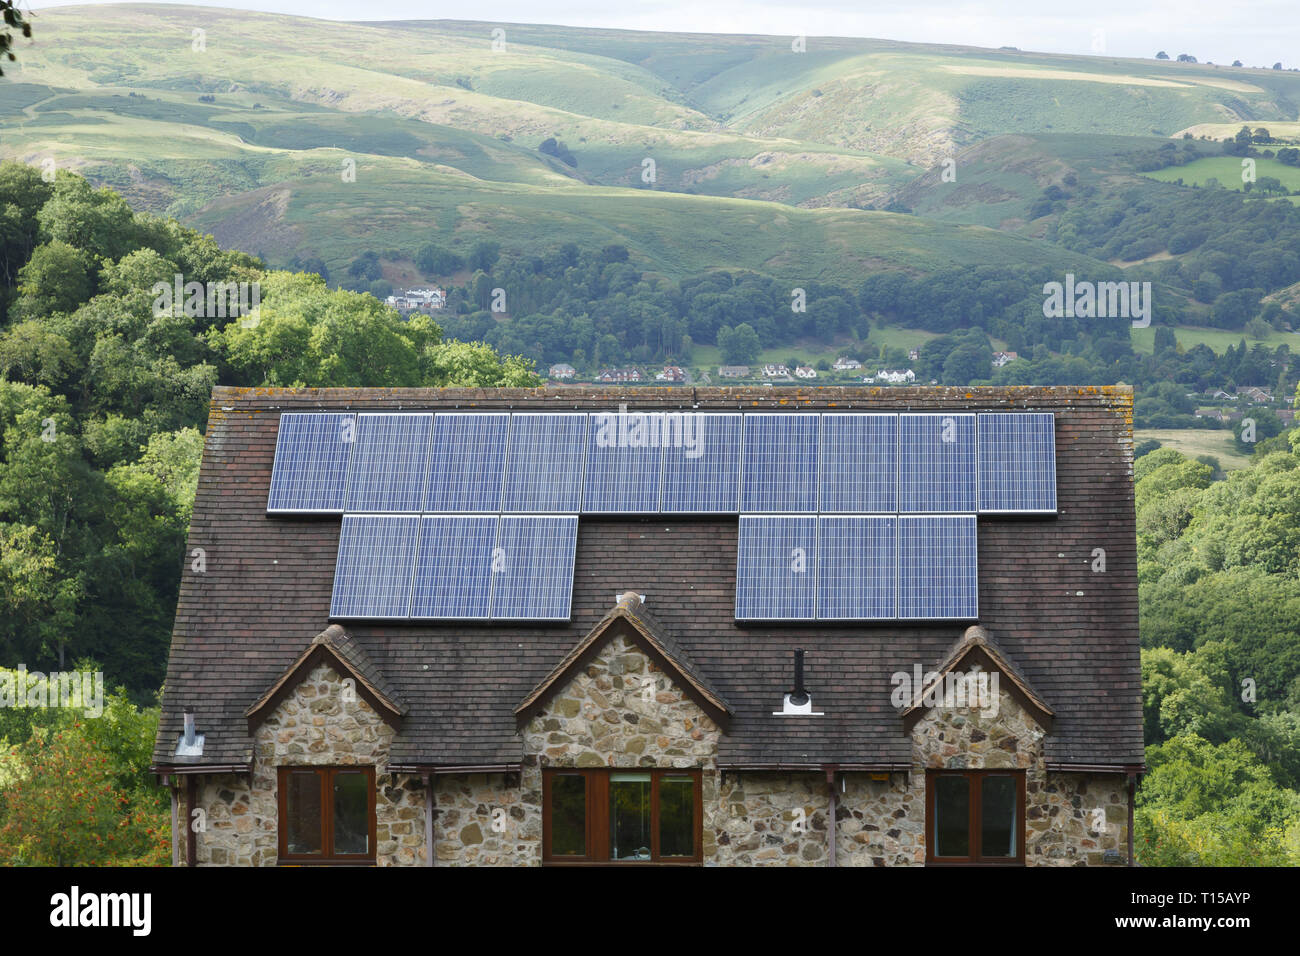 Le Shropshire, Angleterre - le 10 septembre 2013. Des panneaux solaires installés sur le toit d'une maison dans les régions rurales de l'Angleterre. Banque D'Images